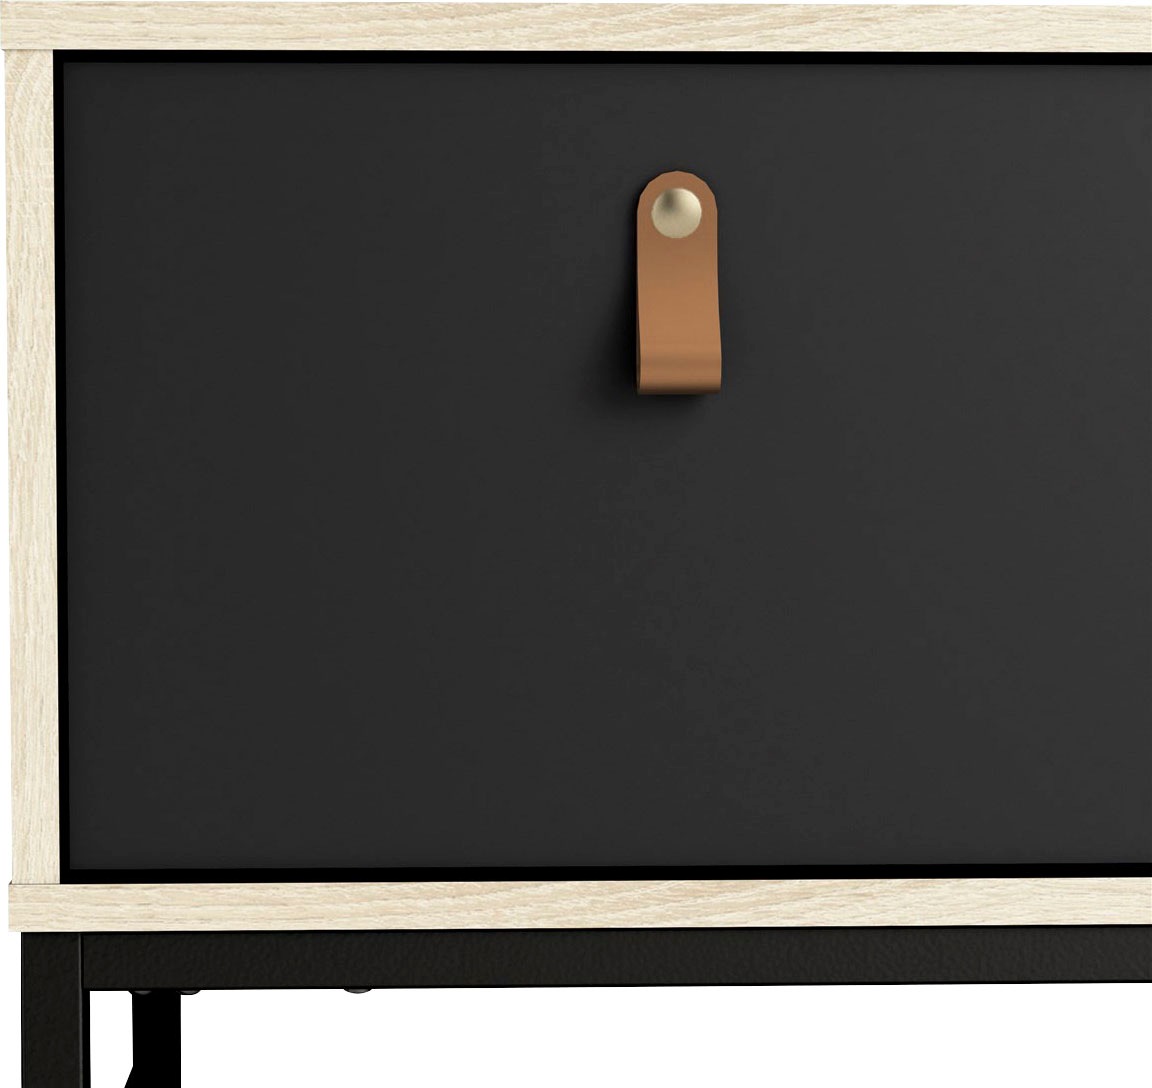 Home affaire TV-Board »Stubbe«, 3 Schubladen, Ledergriffe für die größte Schublade, Breite 117,2 cm